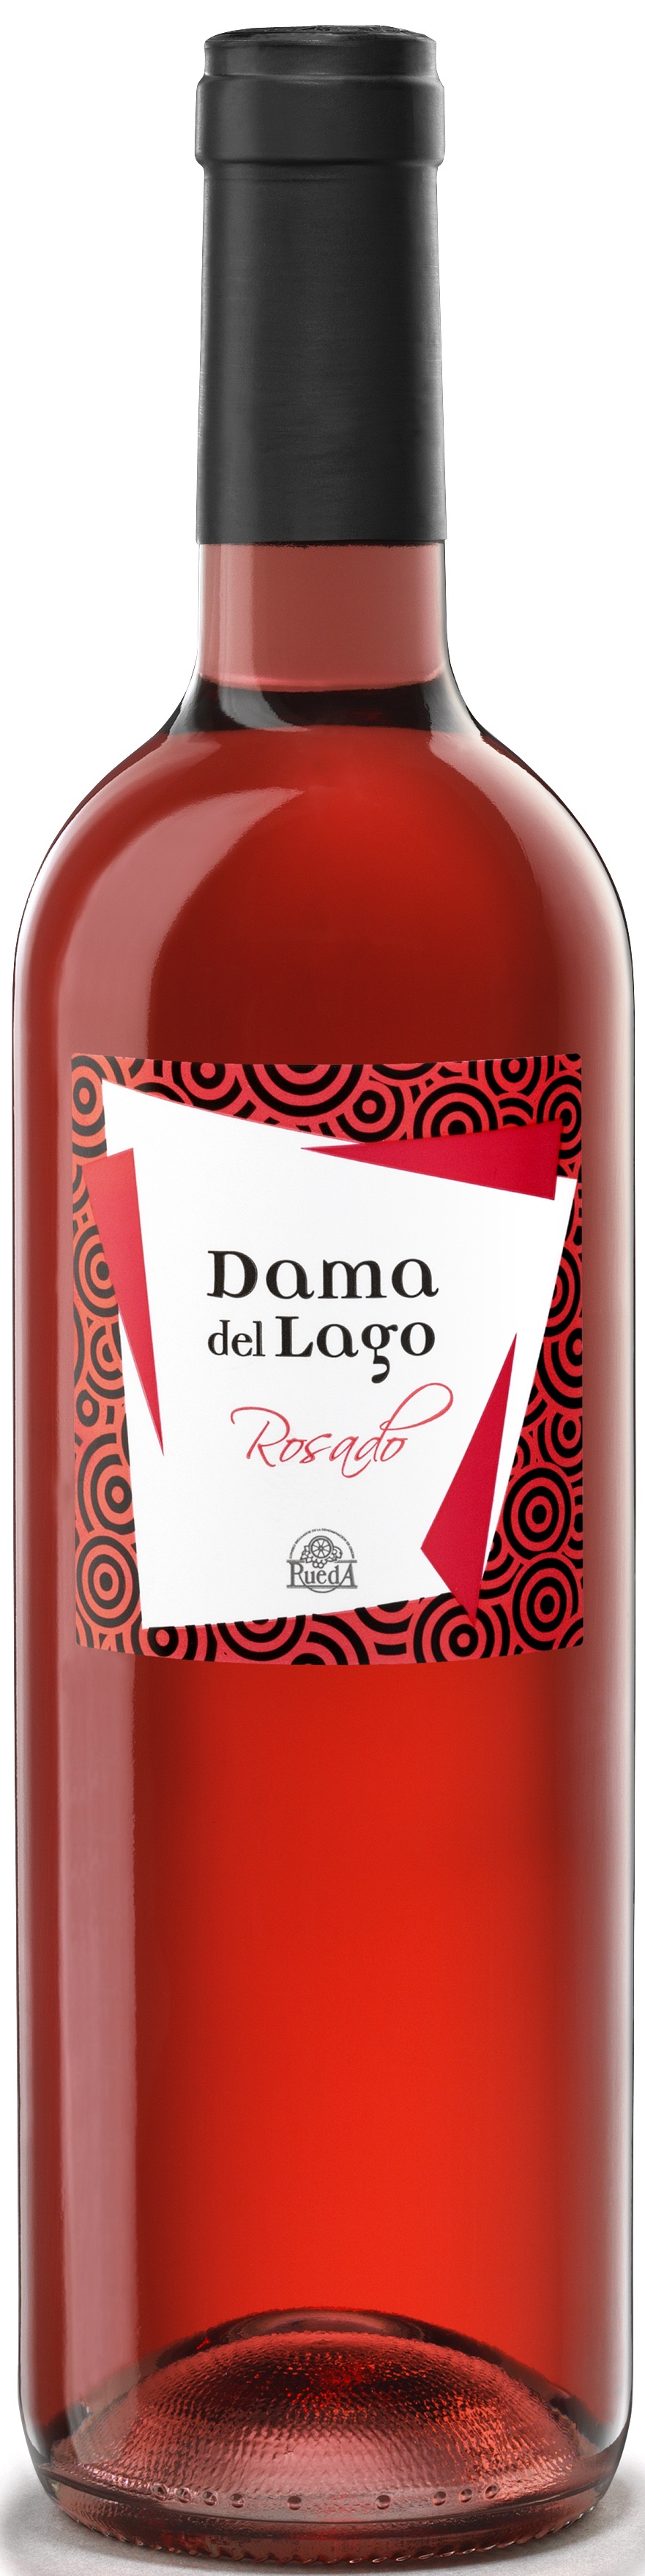 Logo Wein Dama del Lago Rosado